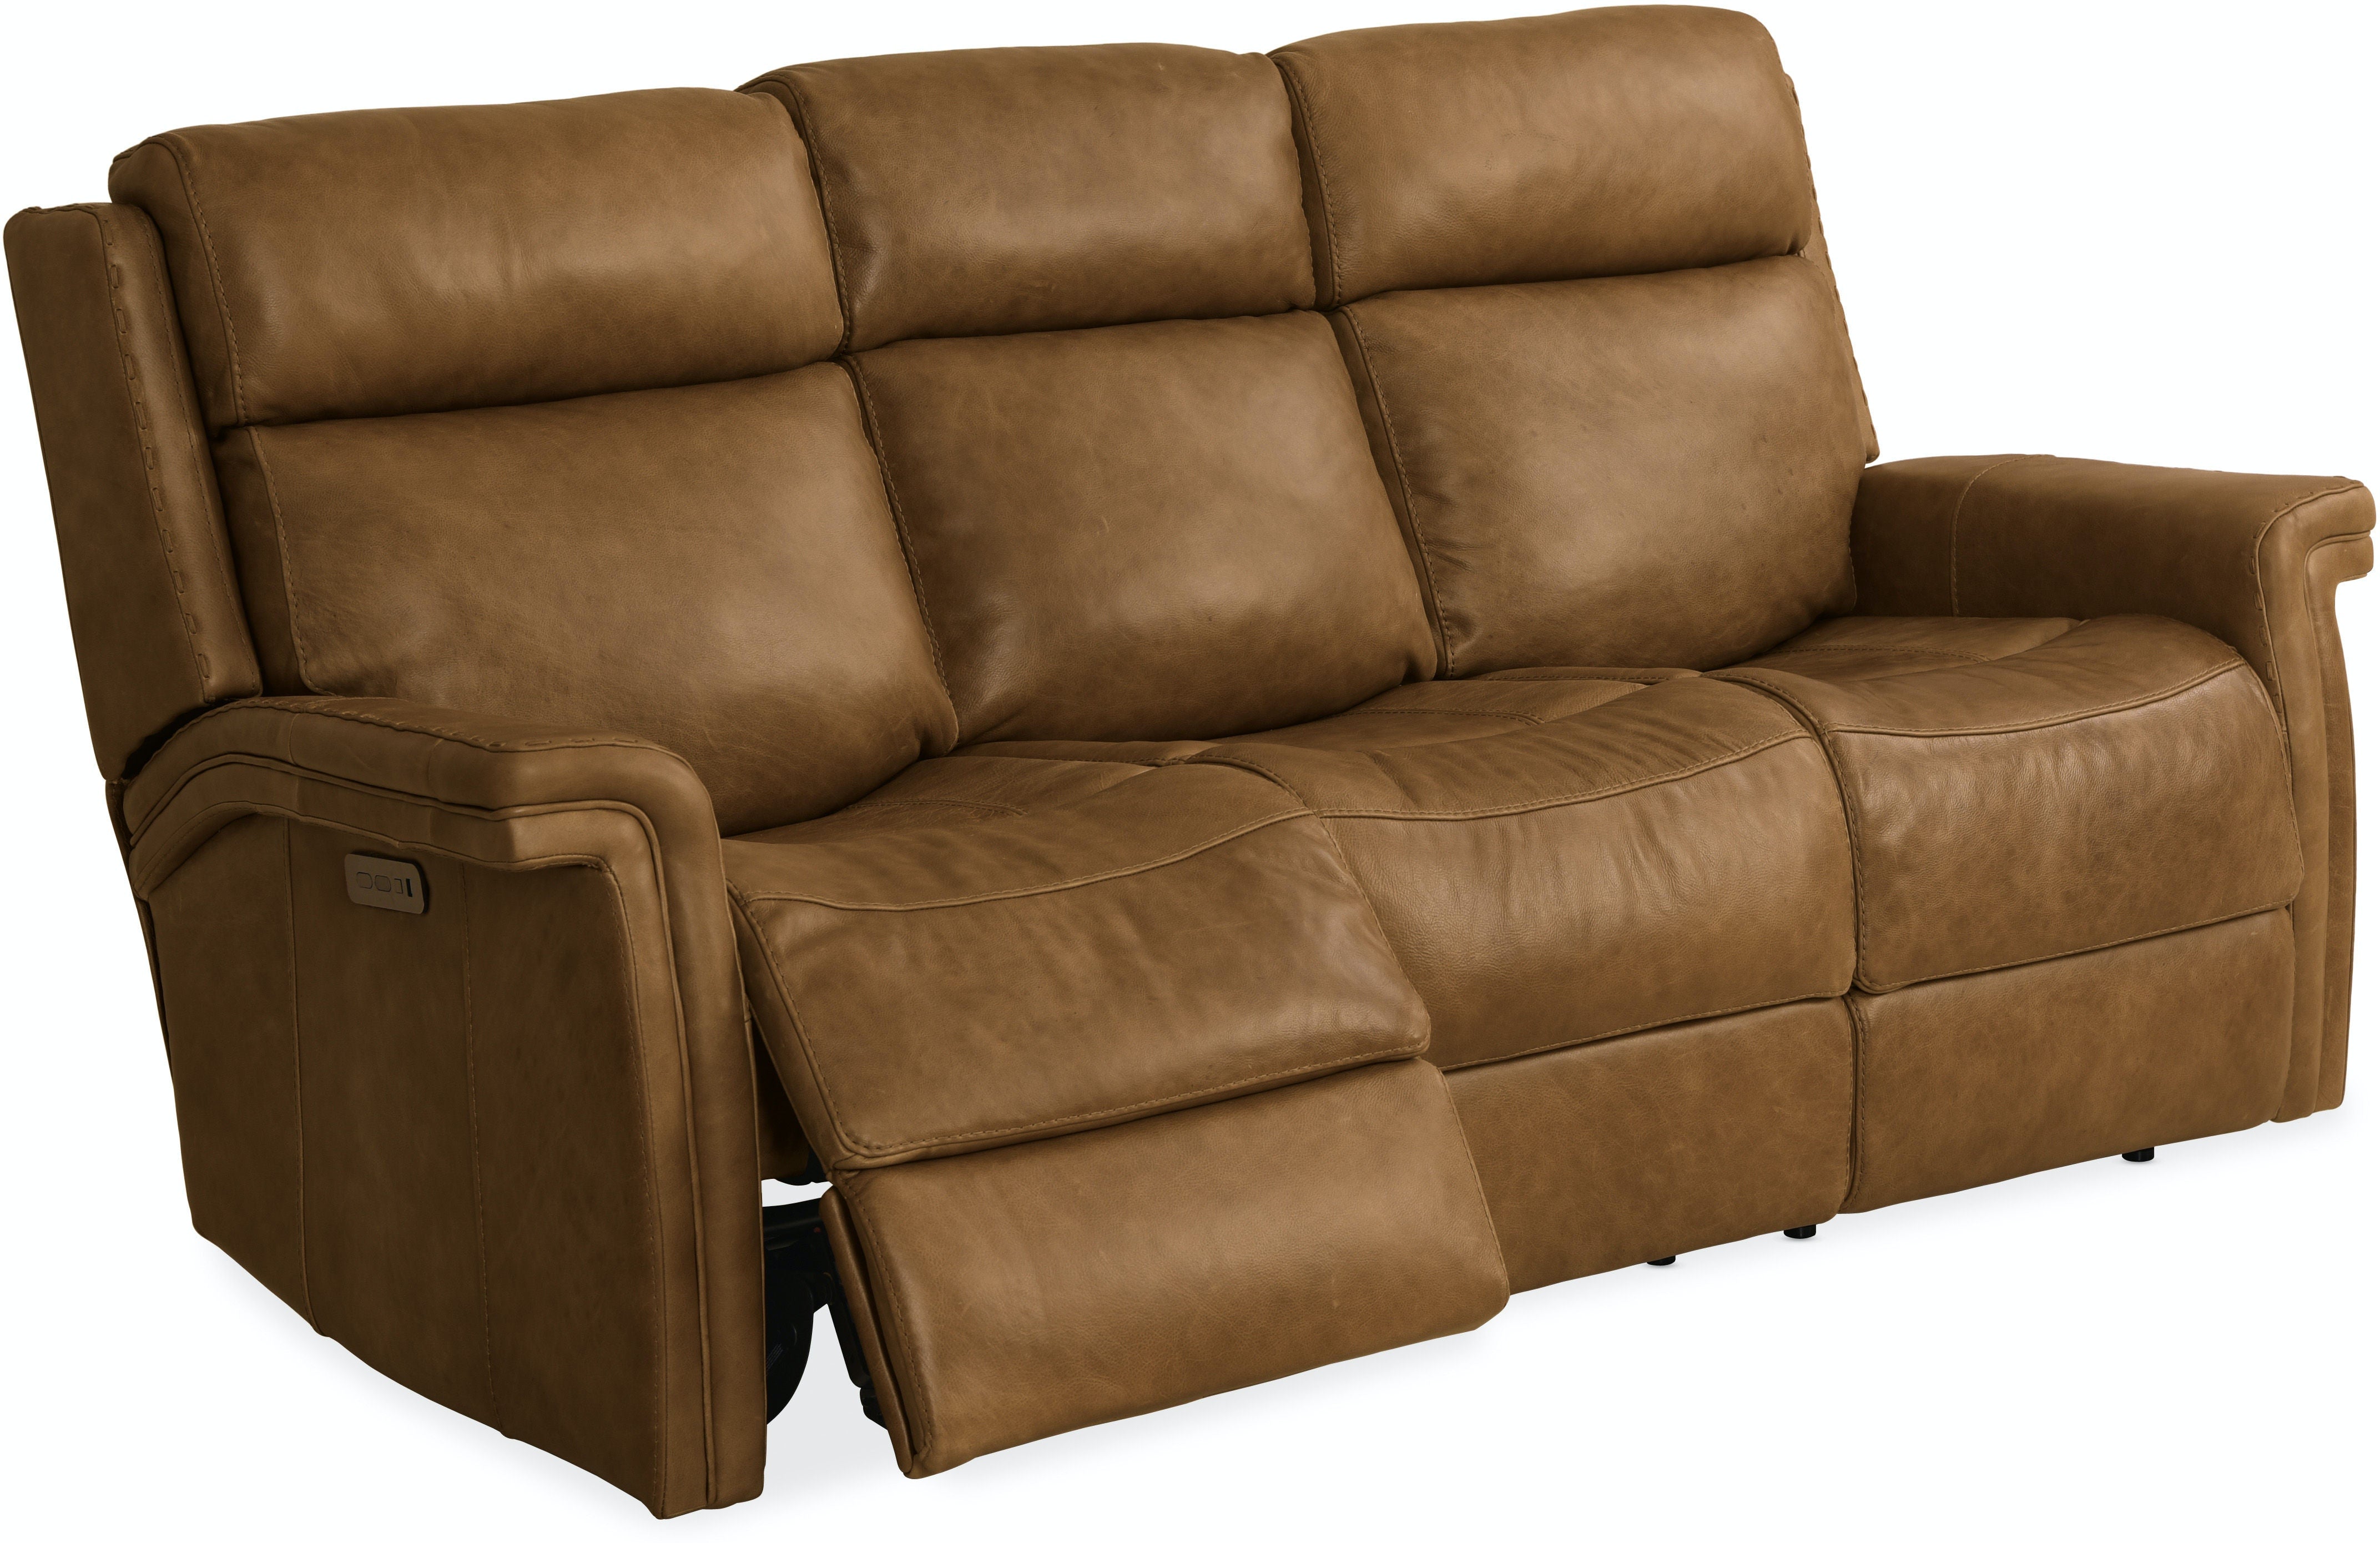 Hooker Furniture Living Room Poise Power Recliner Sofa w/ Power Headrest